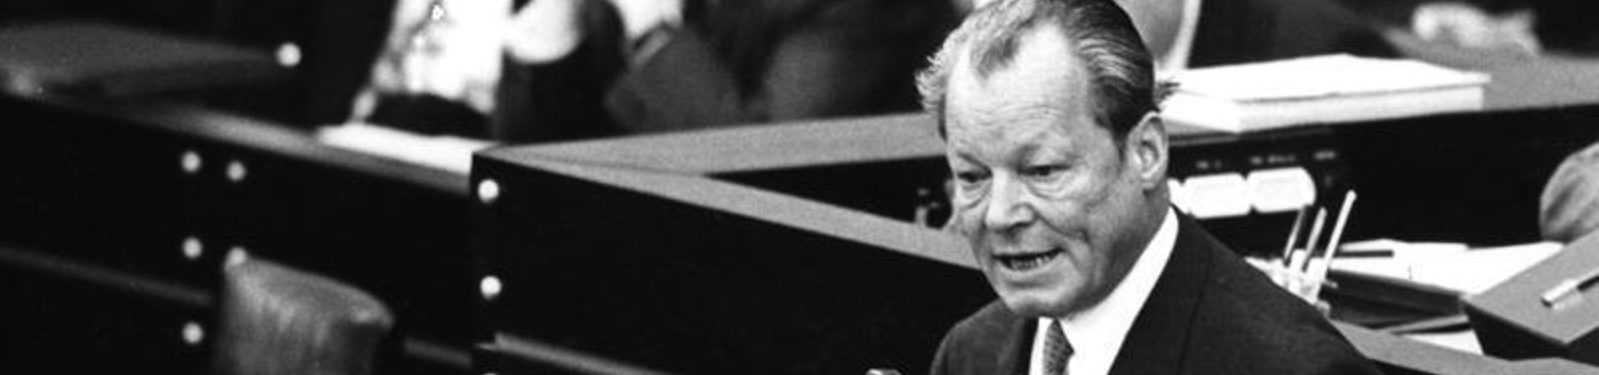 „Krieg ist nicht mehr die ultima ratio, sondern die ultima irratio.“ Willy Brandts Grundsatzrede zum Friedensnobelpreis 1971